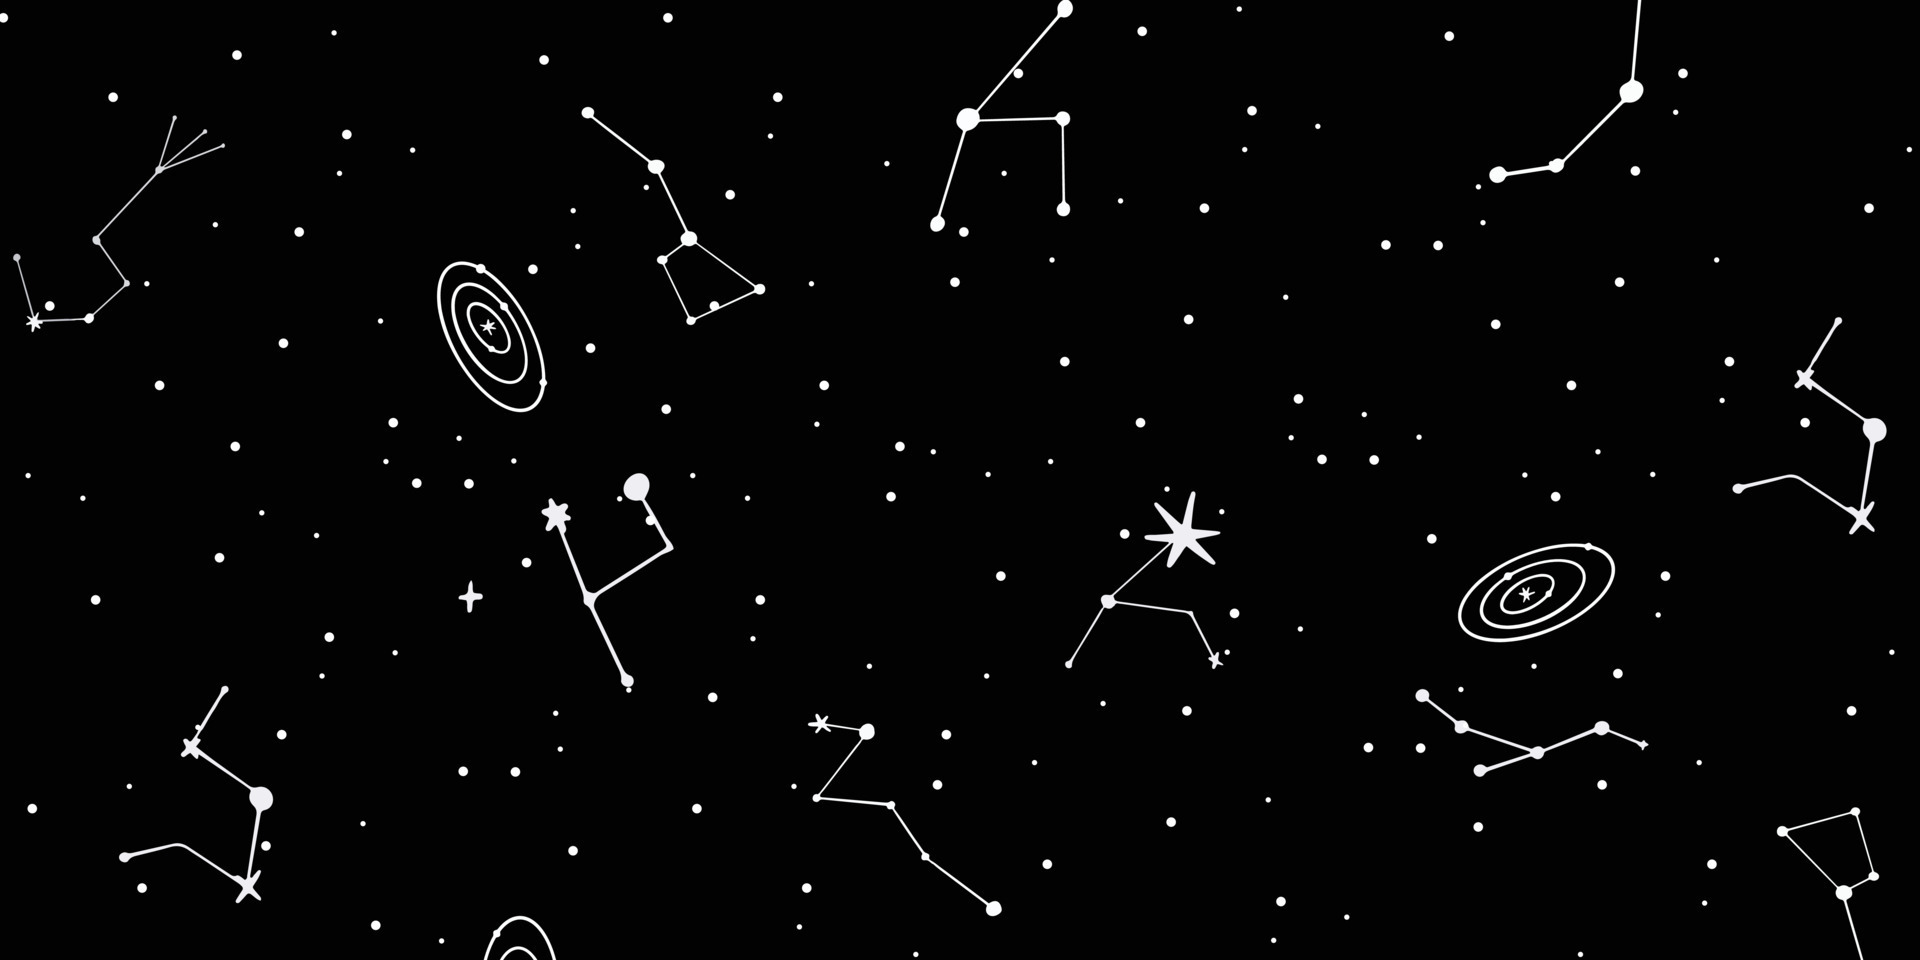 Chòm sao: Chòm sao không chỉ là một cụm sao lấp lánh trên bầu trời, mà còn là những câu chuyện kì thú từng được con người truyền lại qua nhiều thế hệ. Hãy khám phá những bí ẩn của những chòm sao huyền thoại và tìm hiểu tại sao nó lại là niềm đam mê của rất nhiều người.